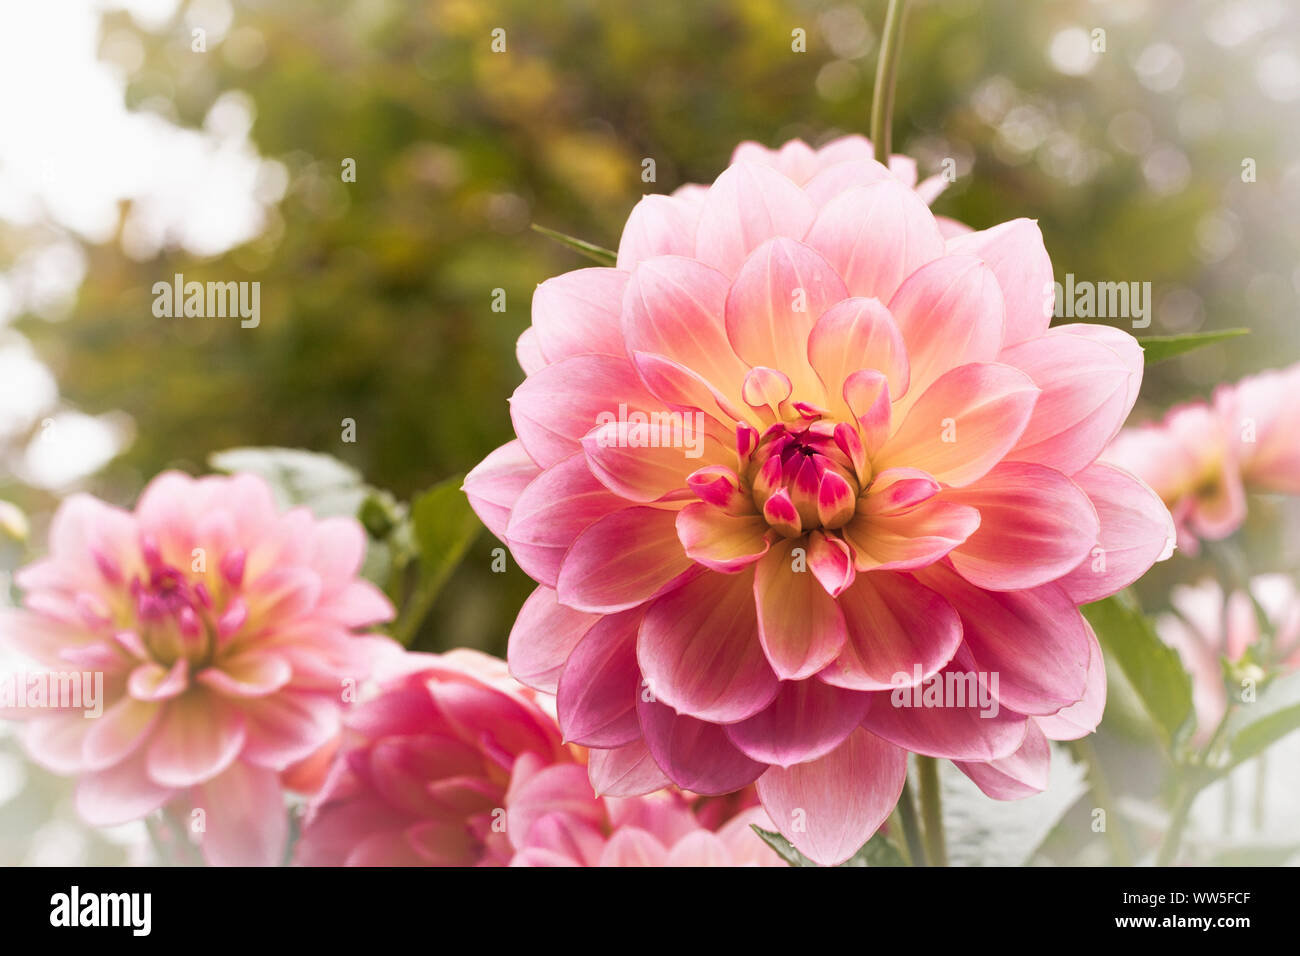 La meravigliosa fioritura di una dalia (Dahlia), close-up Foto Stock